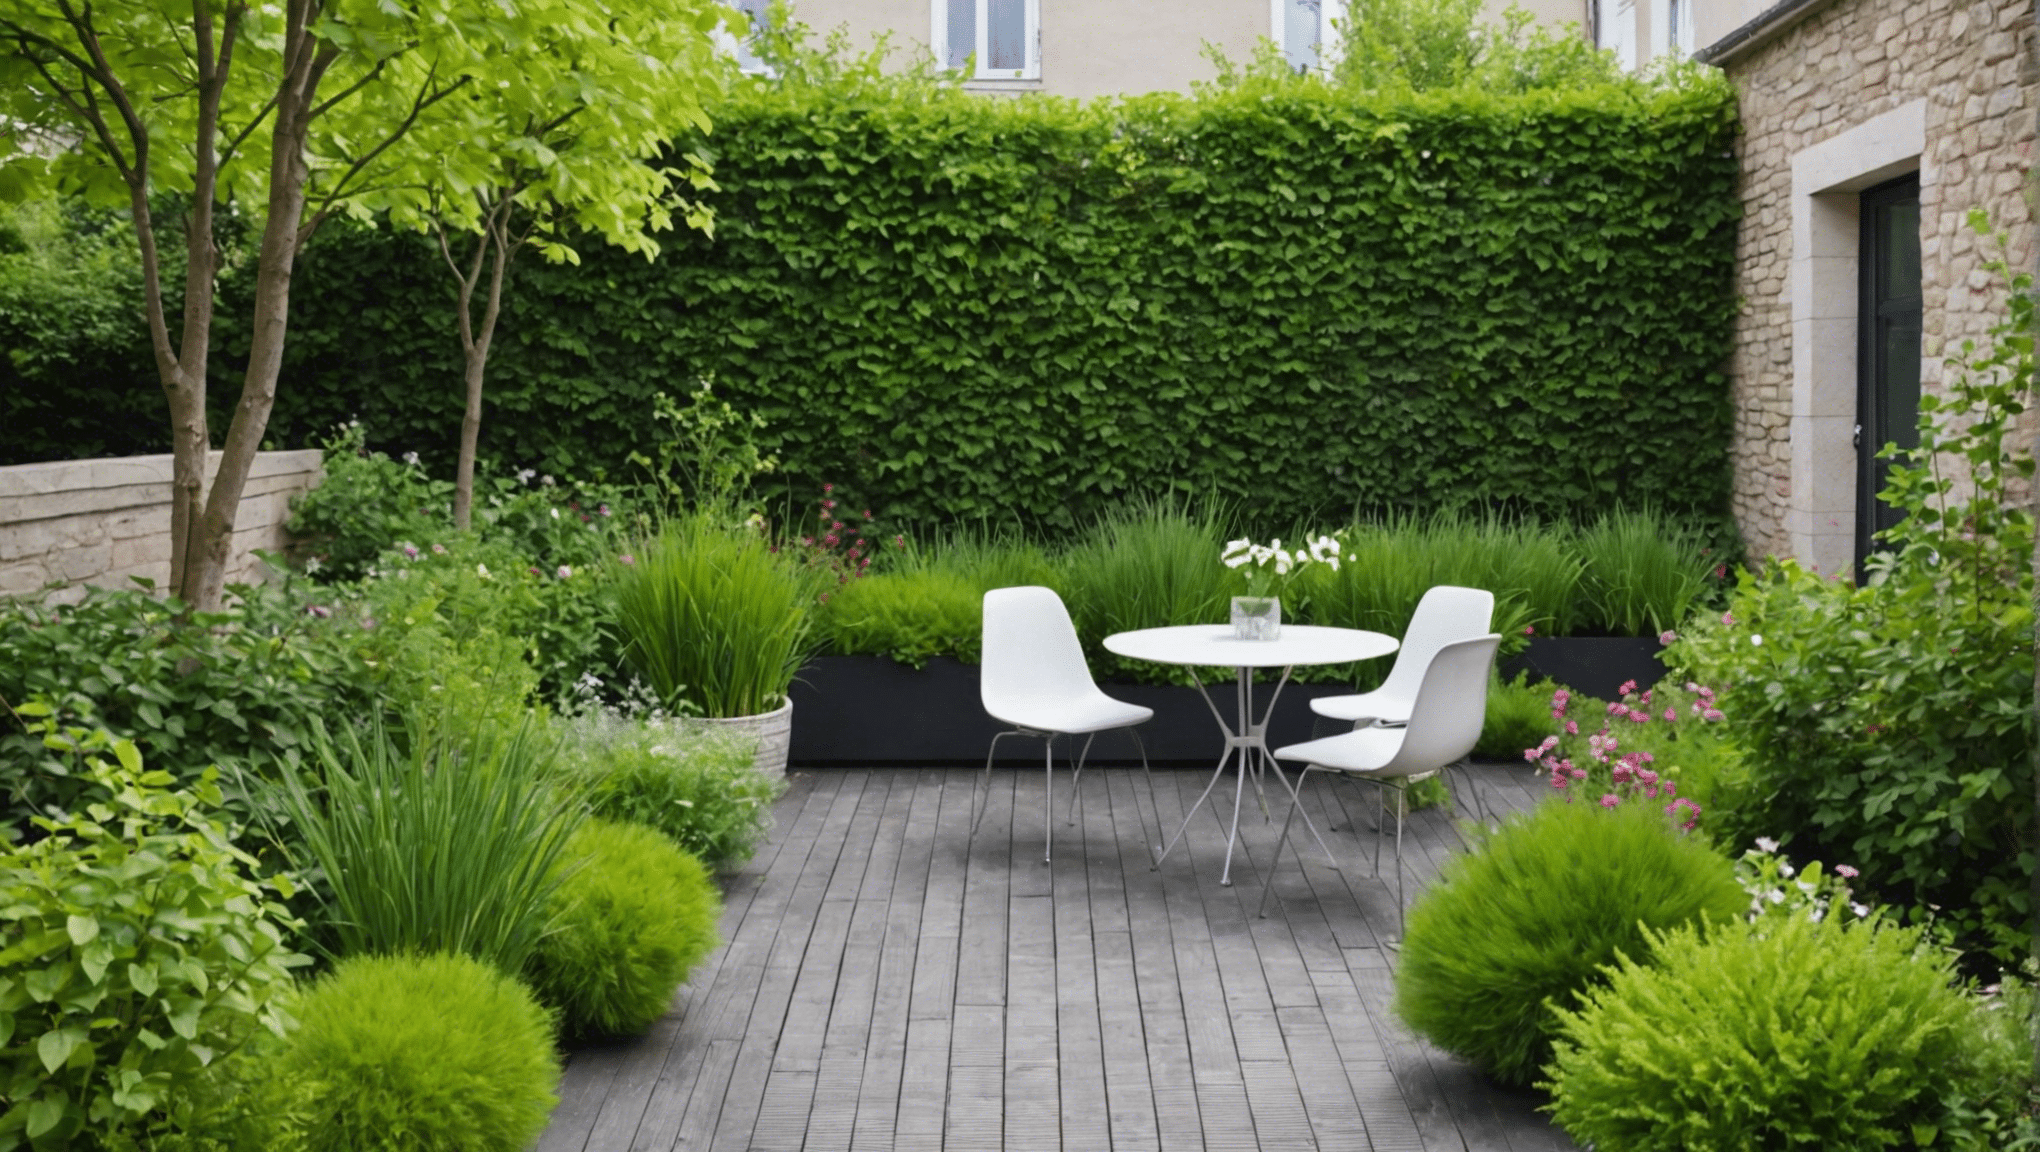 découvrez des conseils et astuces pour profiter pleinement des terrasses et jardins verts en 2024. aménagez et entretenez votre espace extérieur pour en faire un lieu de détente et de convivialité.